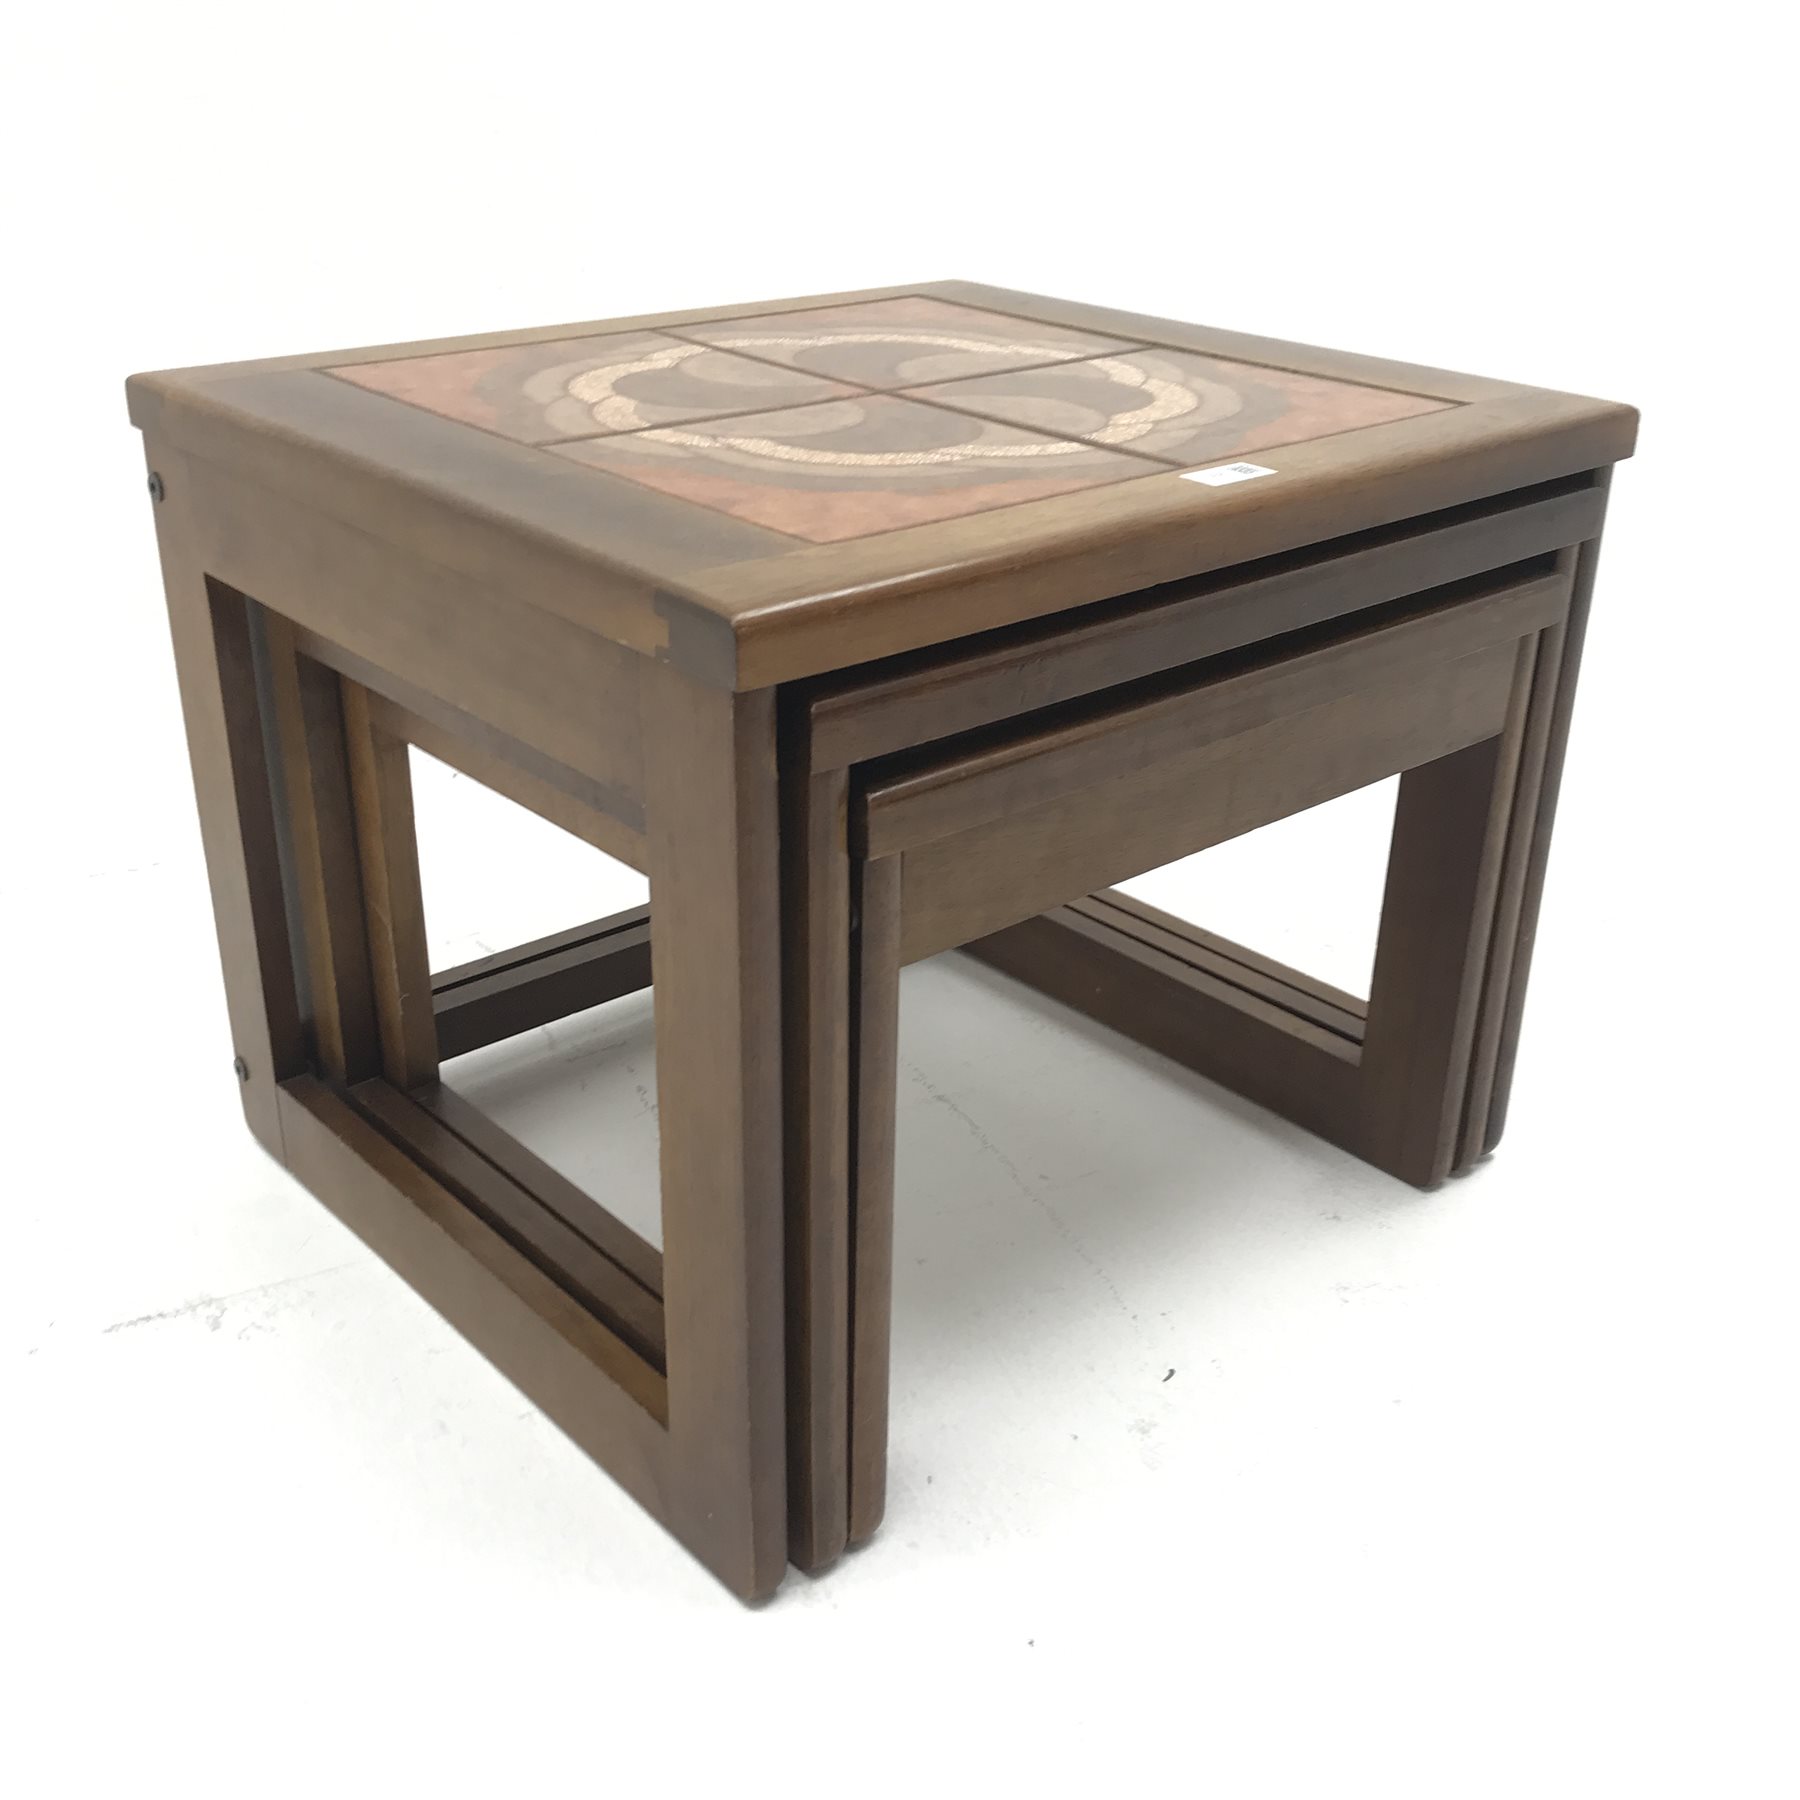 G Plan teak nest tables, inset tile tops, W56cm, H45cm, D51cm - Image 2 of 8